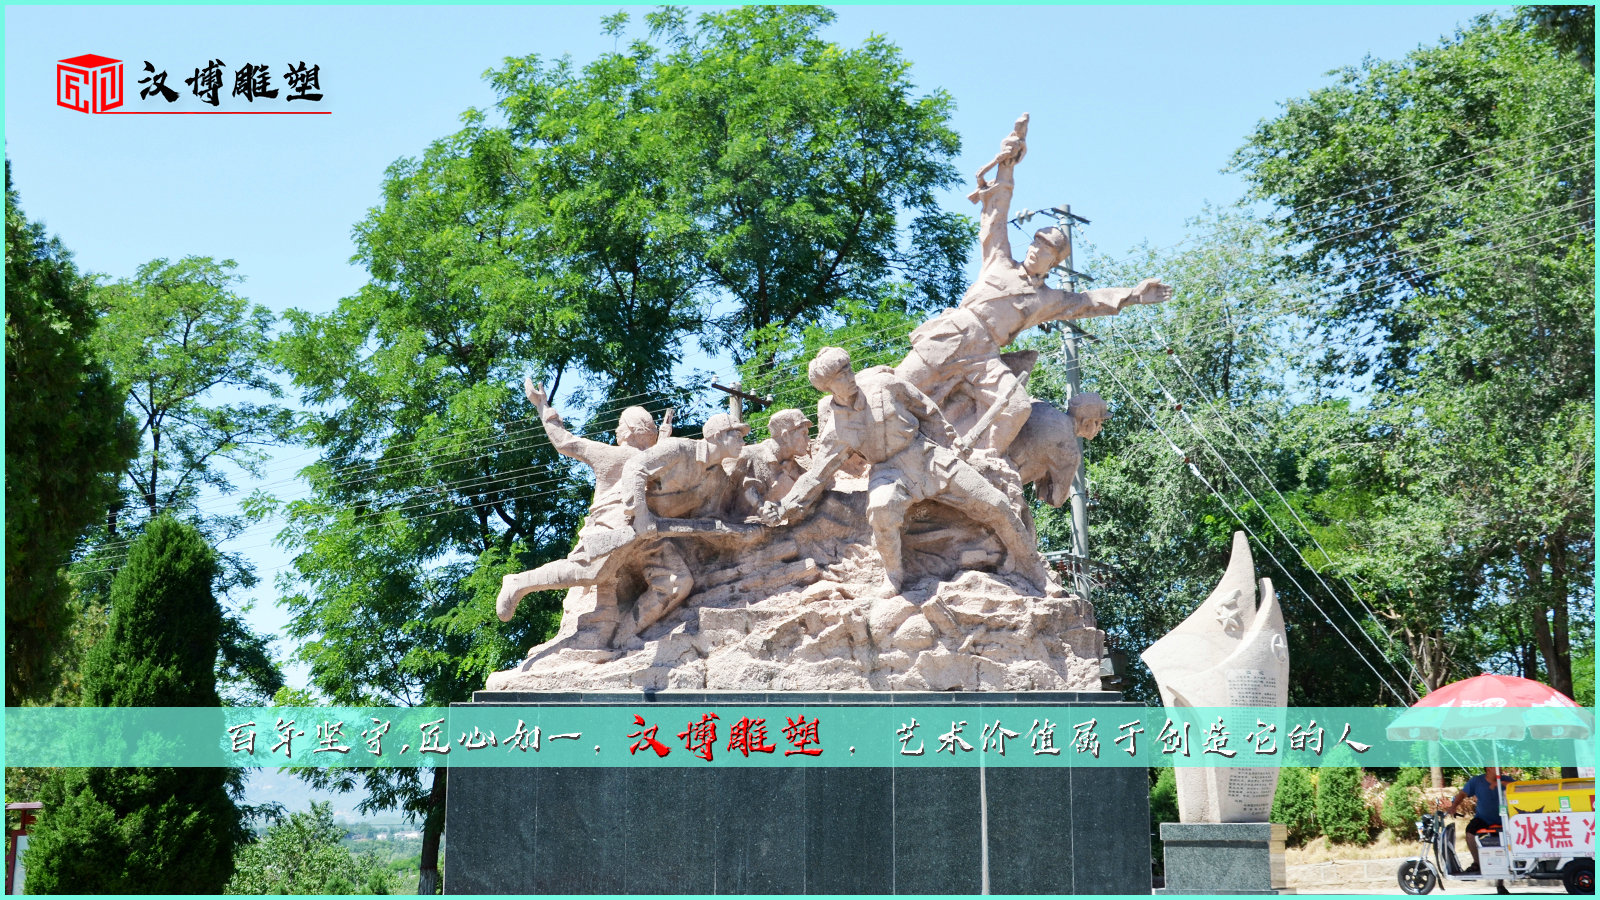 广场景观铜雕,纪念性雕塑,人物雕像